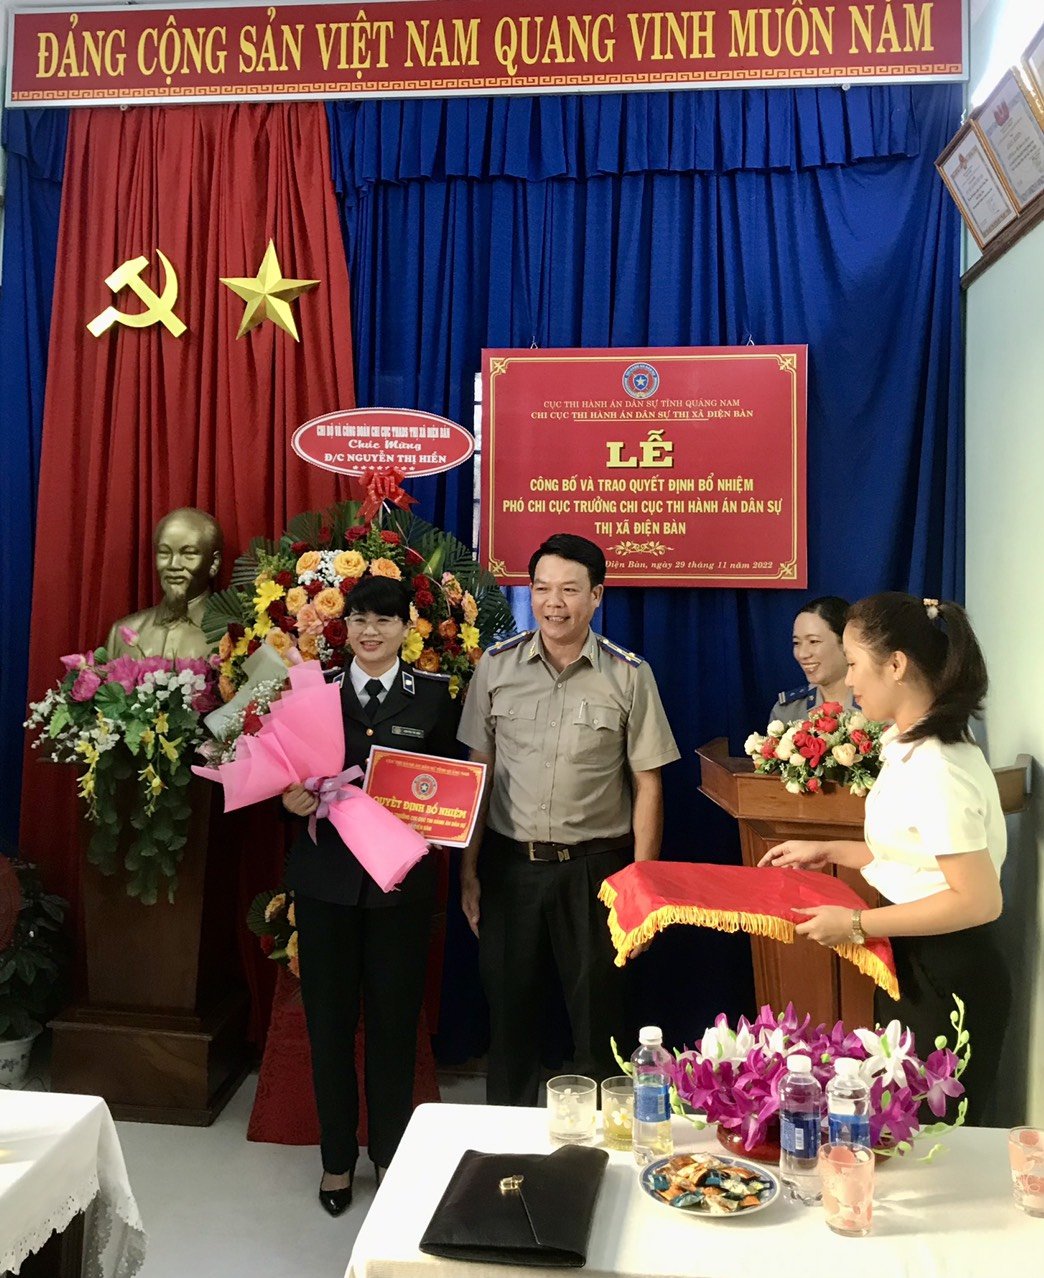 Lễ công bố quyết định bổ nhiệm Phó Chi cục trưởng Chi cục Thi hàn án dân sự thị xã Điện Bàn